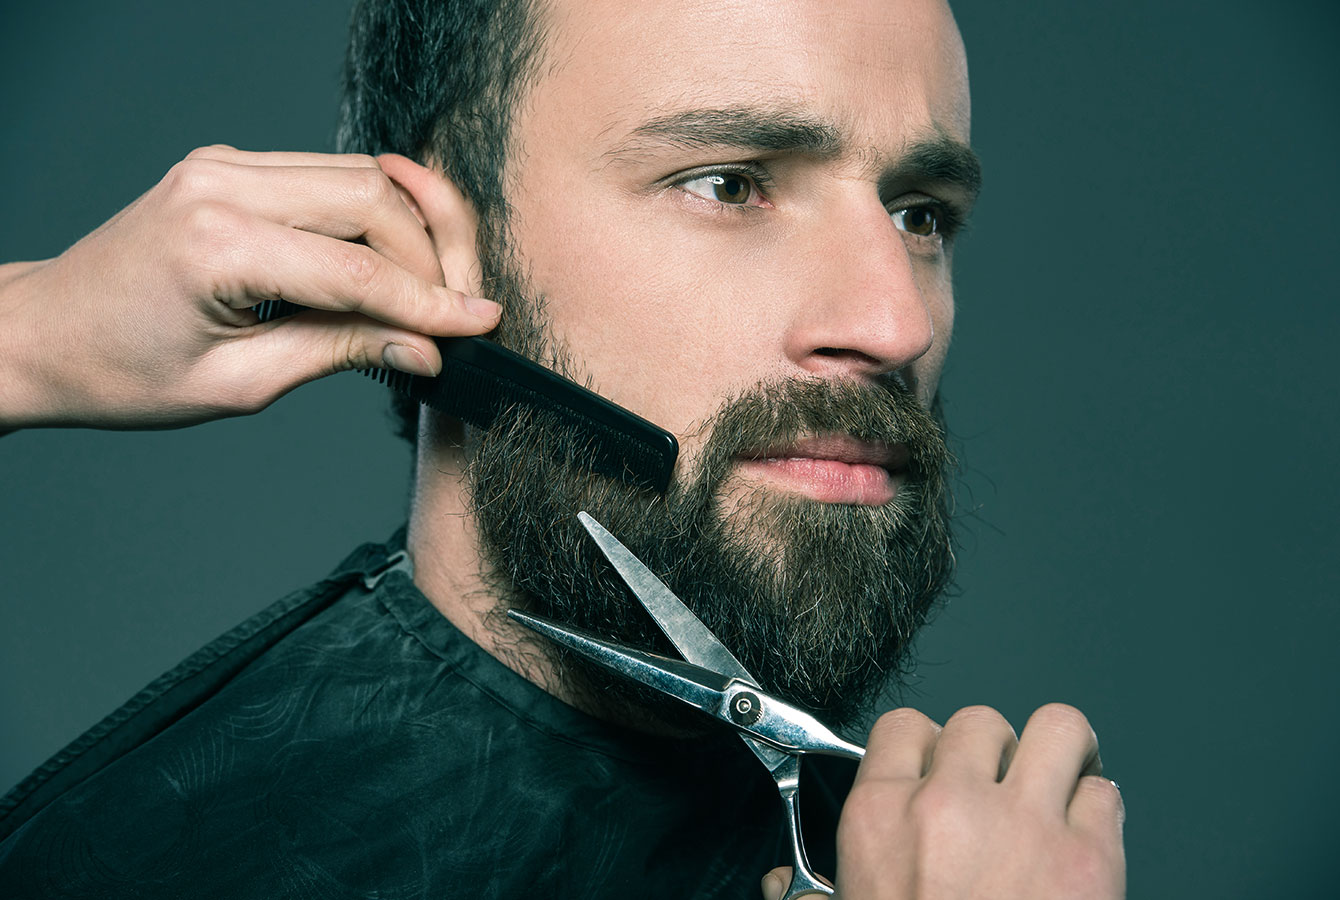 Profesionalni brijač stilizira bradu klijentu.